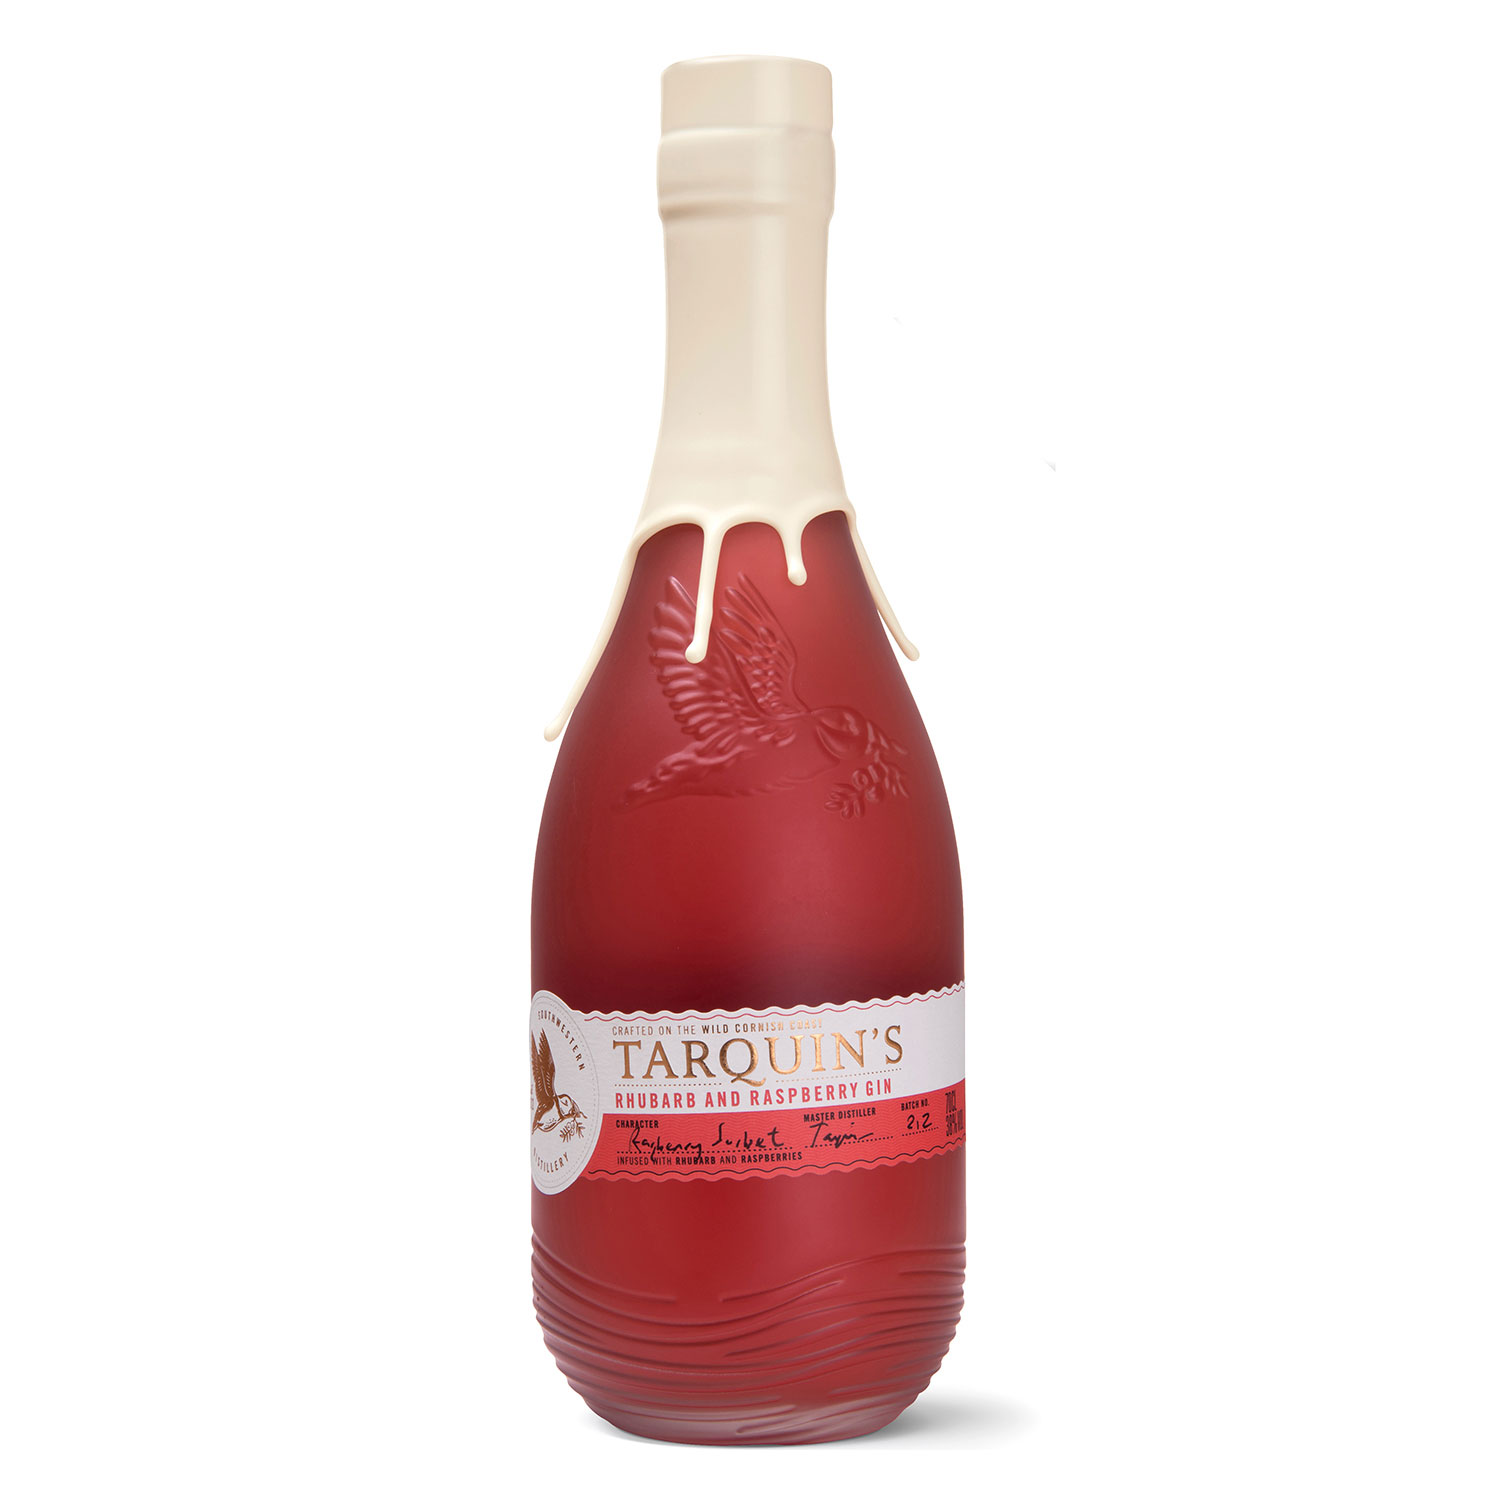 Tarquin's Rhubarb and Raspberry Gin 700 ml